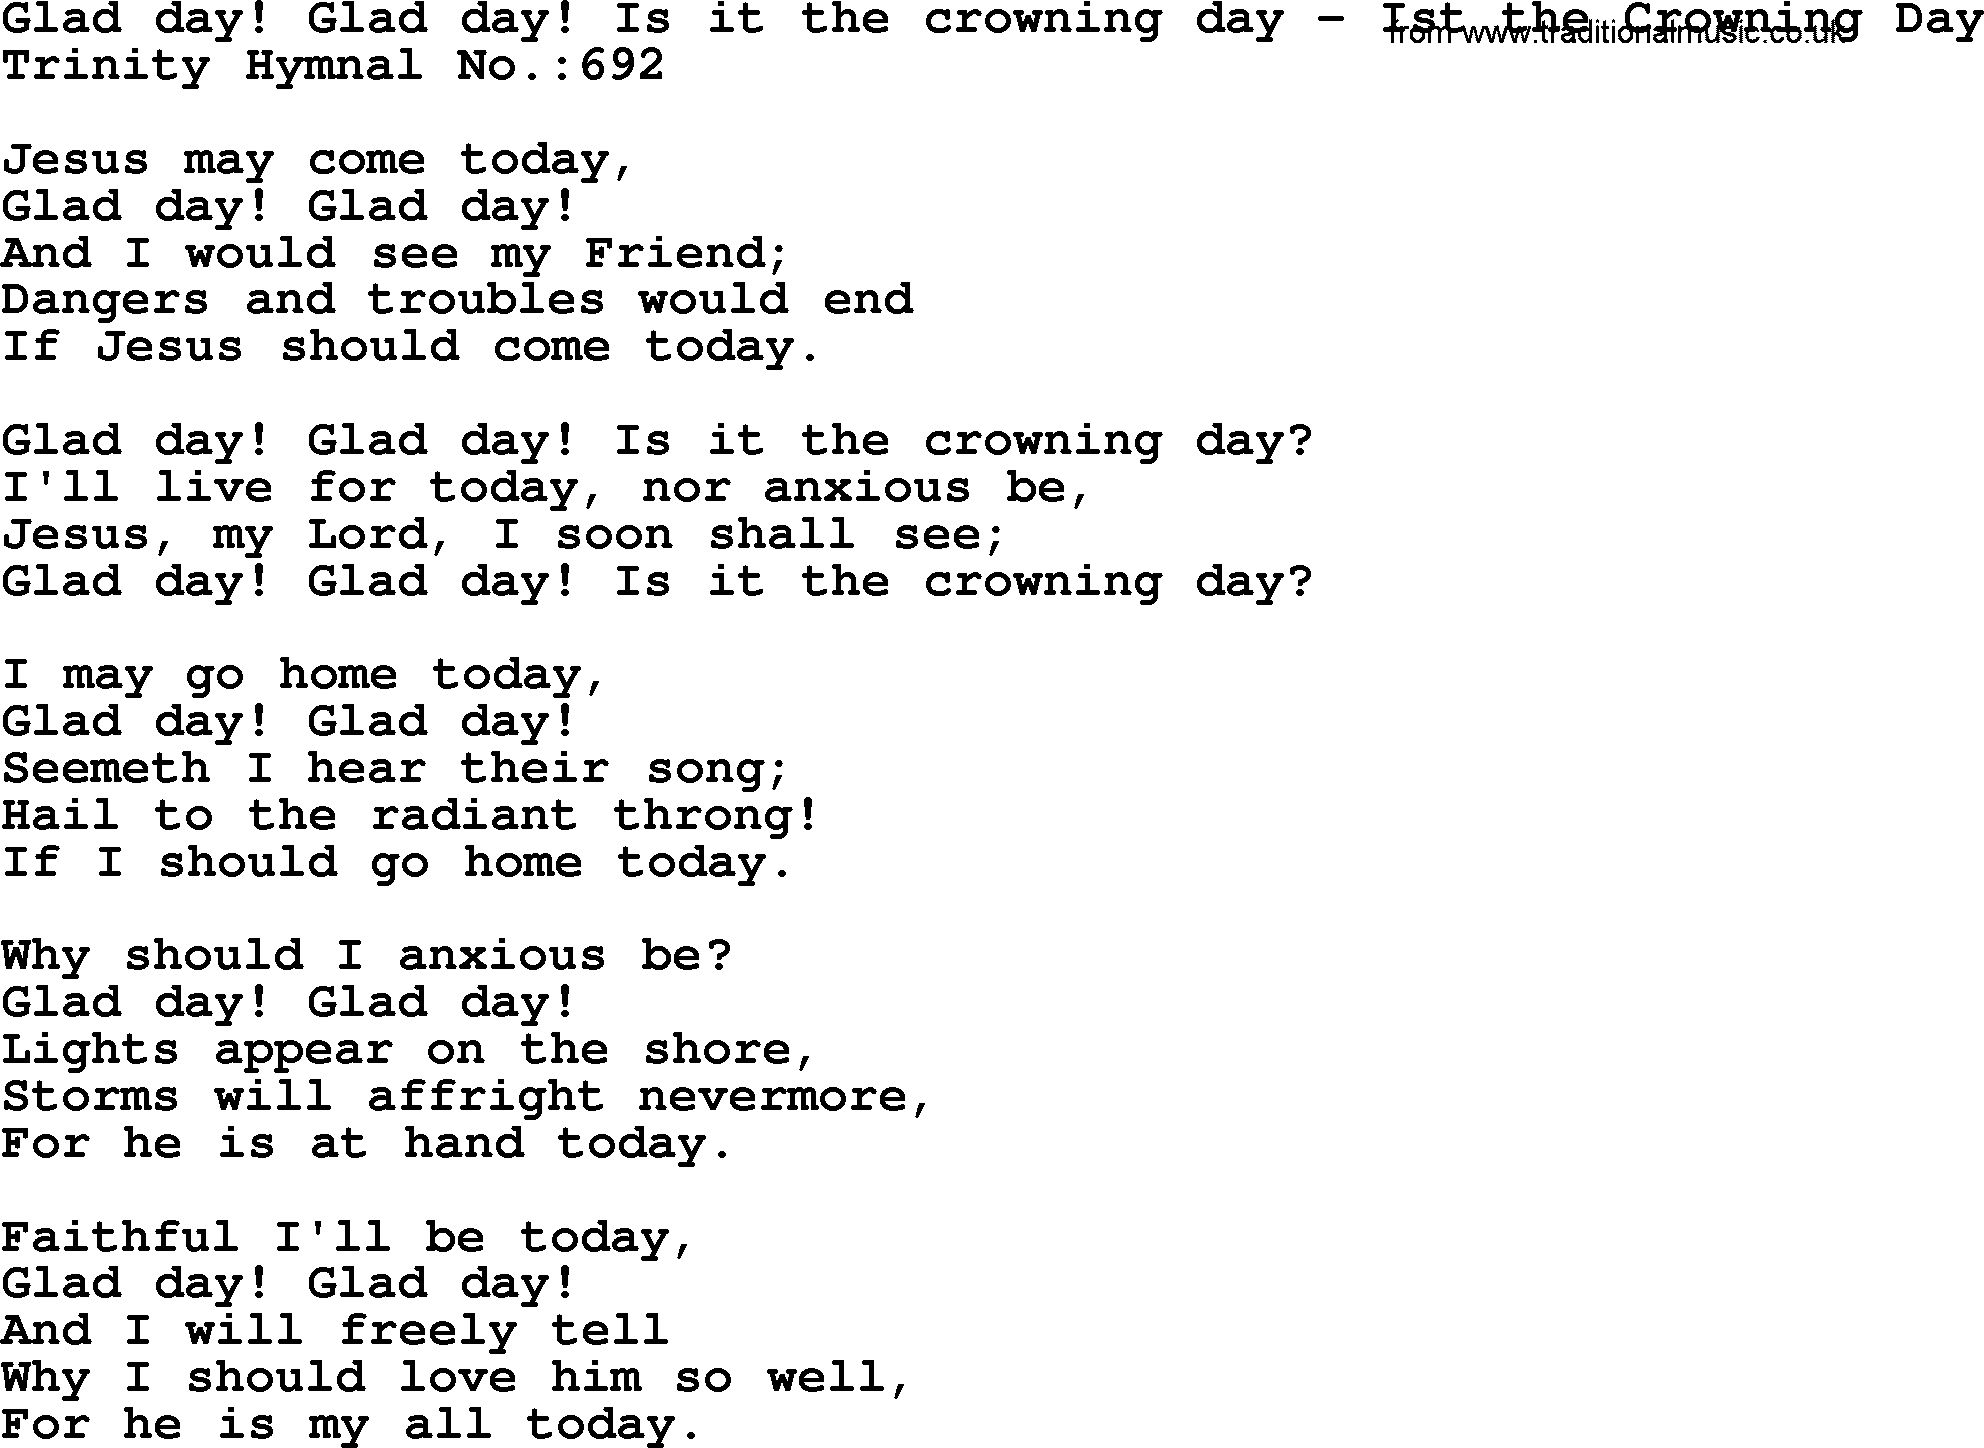 Trinity Hymnal Hymn: Glad Day! Glad Day! Is It The Crowning Day--Ist The Crowning Day, lyrics with midi music